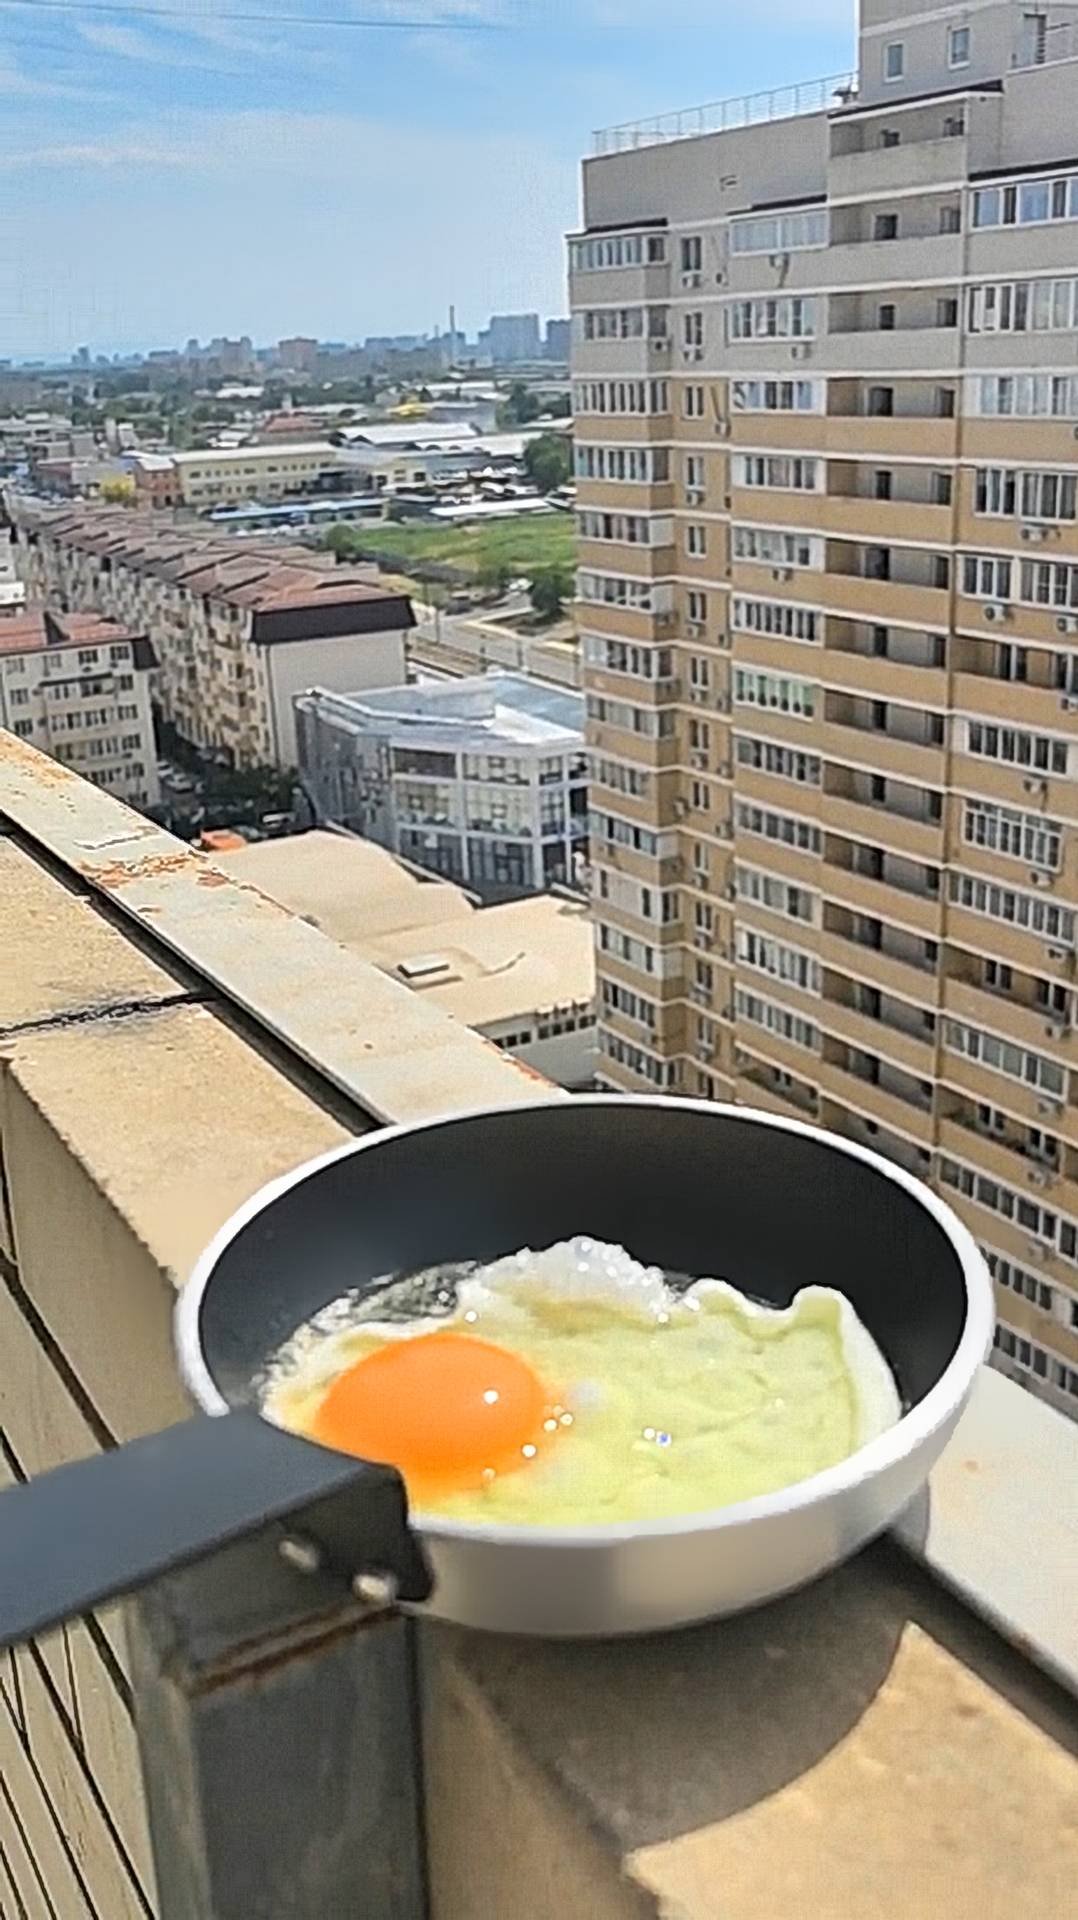 По интернету гуляет видео из Краснодара, где жарят яичницу на сковороде..